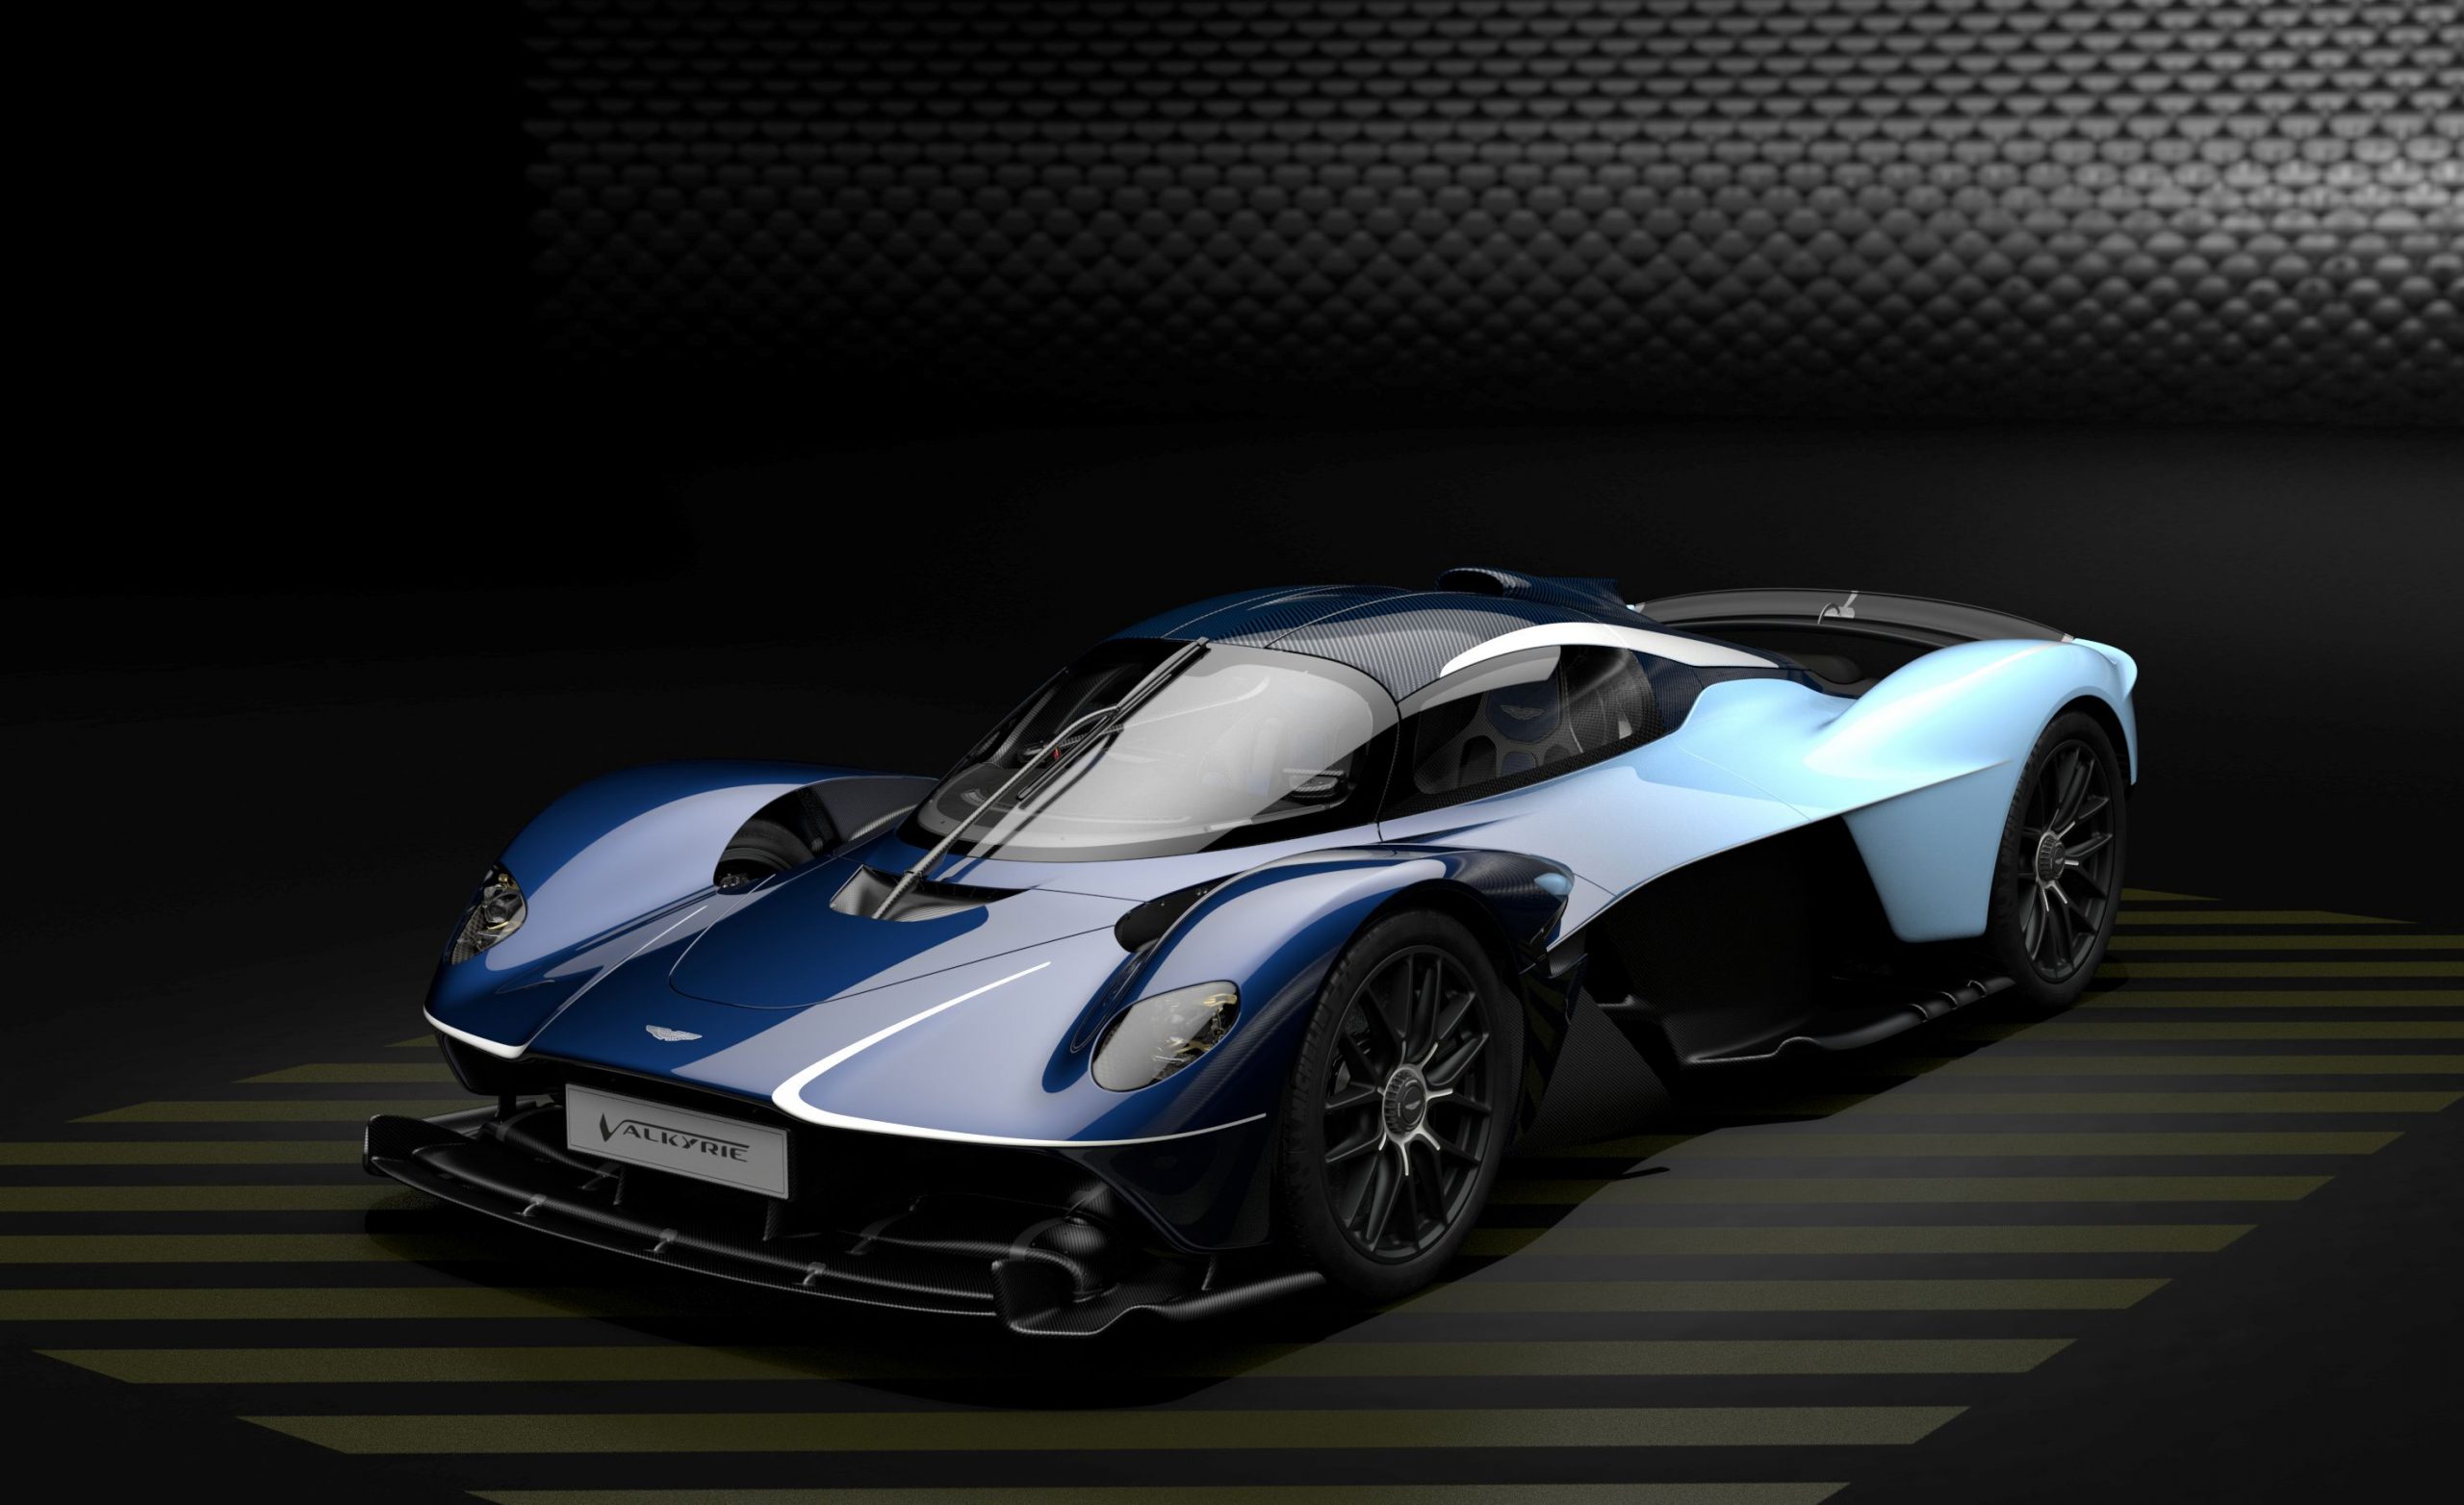  Aston Martin với tên gọi Valkyrie cuối cùng sẽ bắt đầu đến tay khách hàng vào giữa năm nay